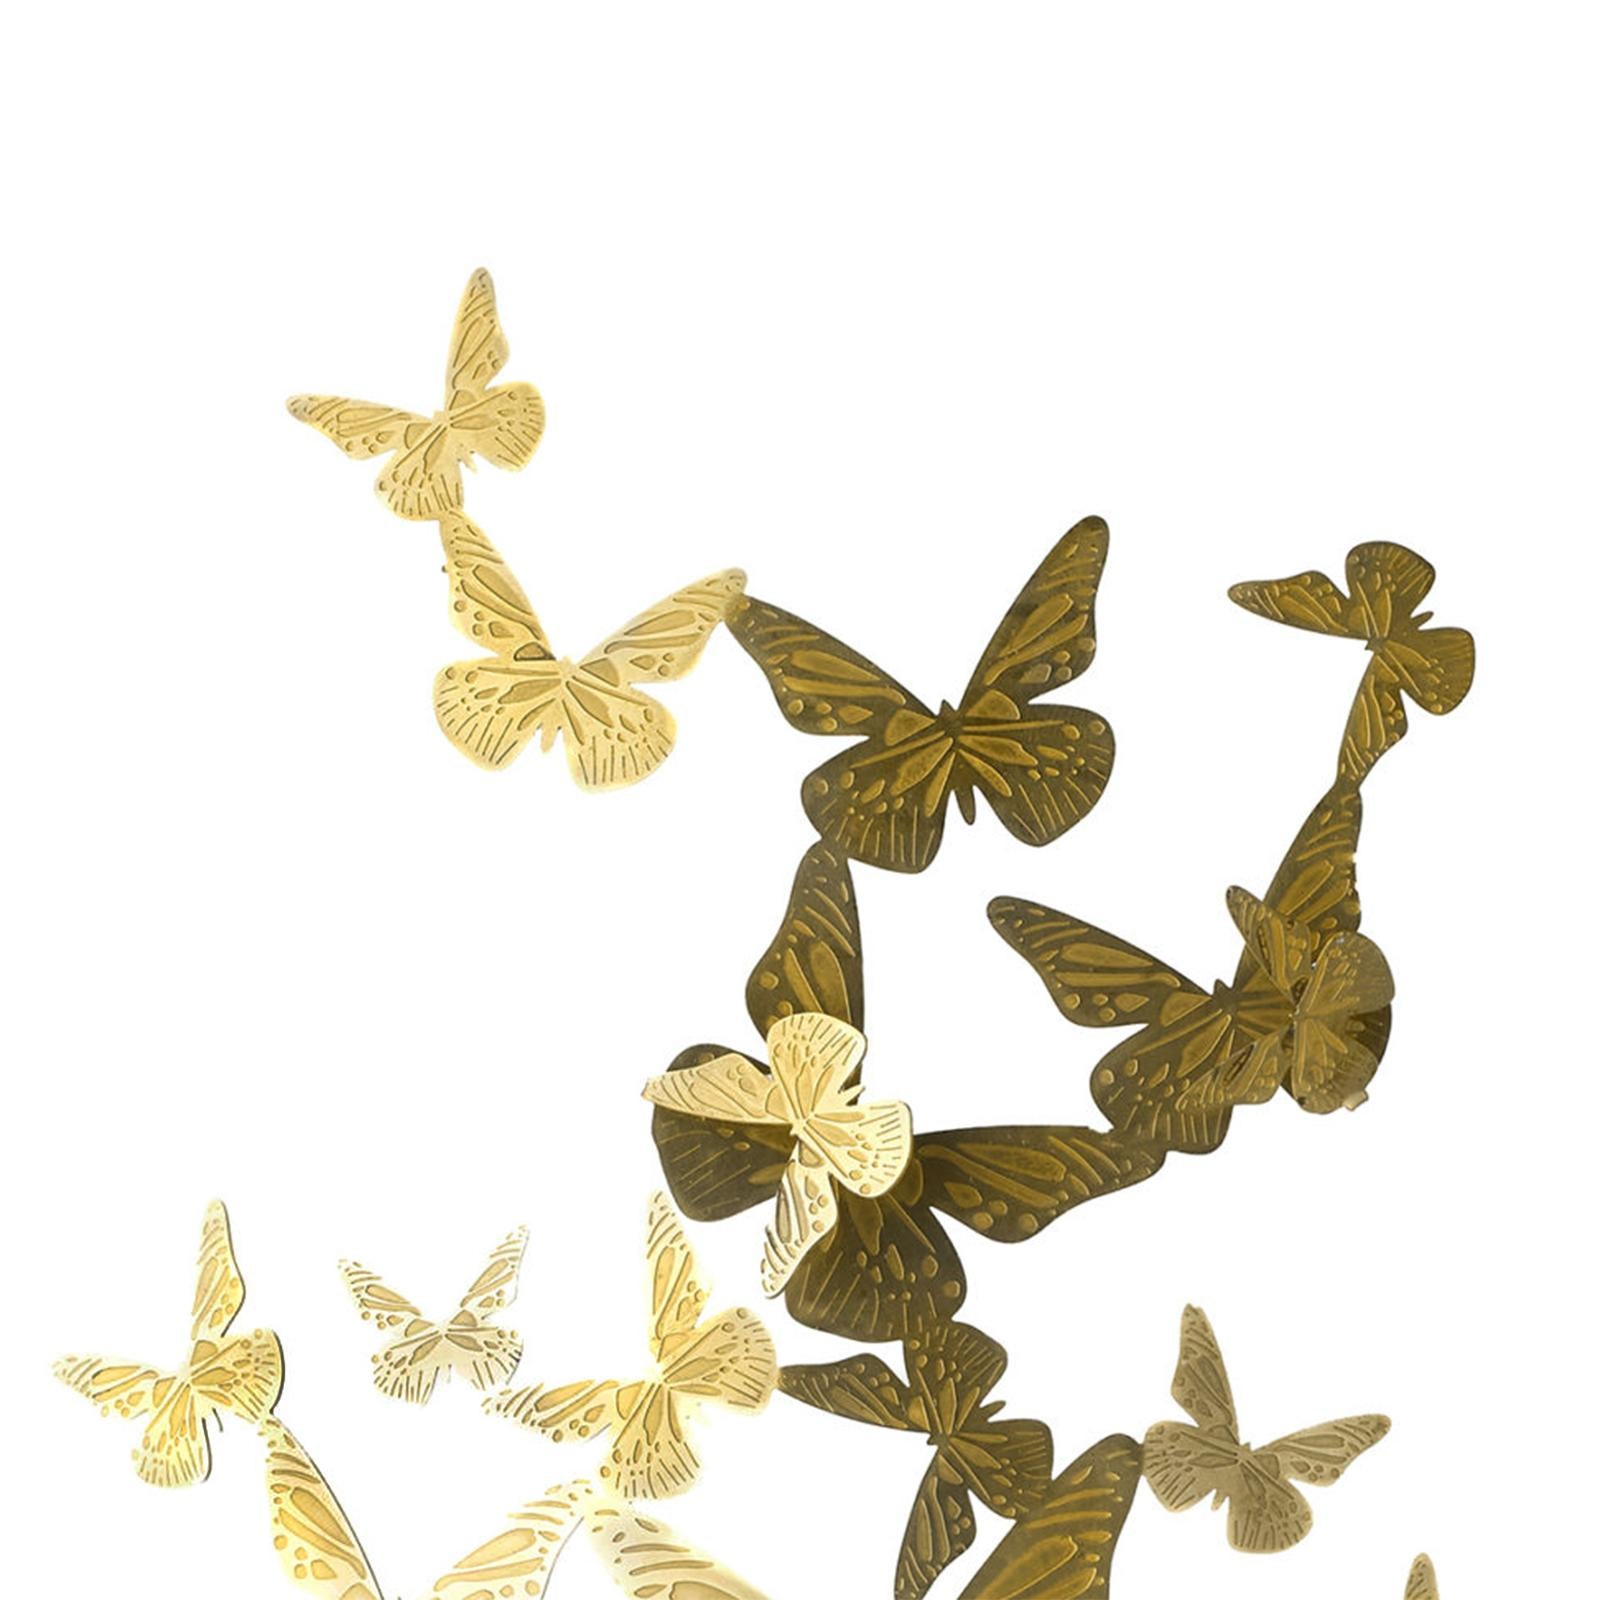 Schüssel Schmetterling mit Kristallglasschale
und mit massiven Messingblättern.
Maße: Schale: Durchmesser 20cm x Höhe 11,5cm.
Schale und Libellen Höhe: 29cm.